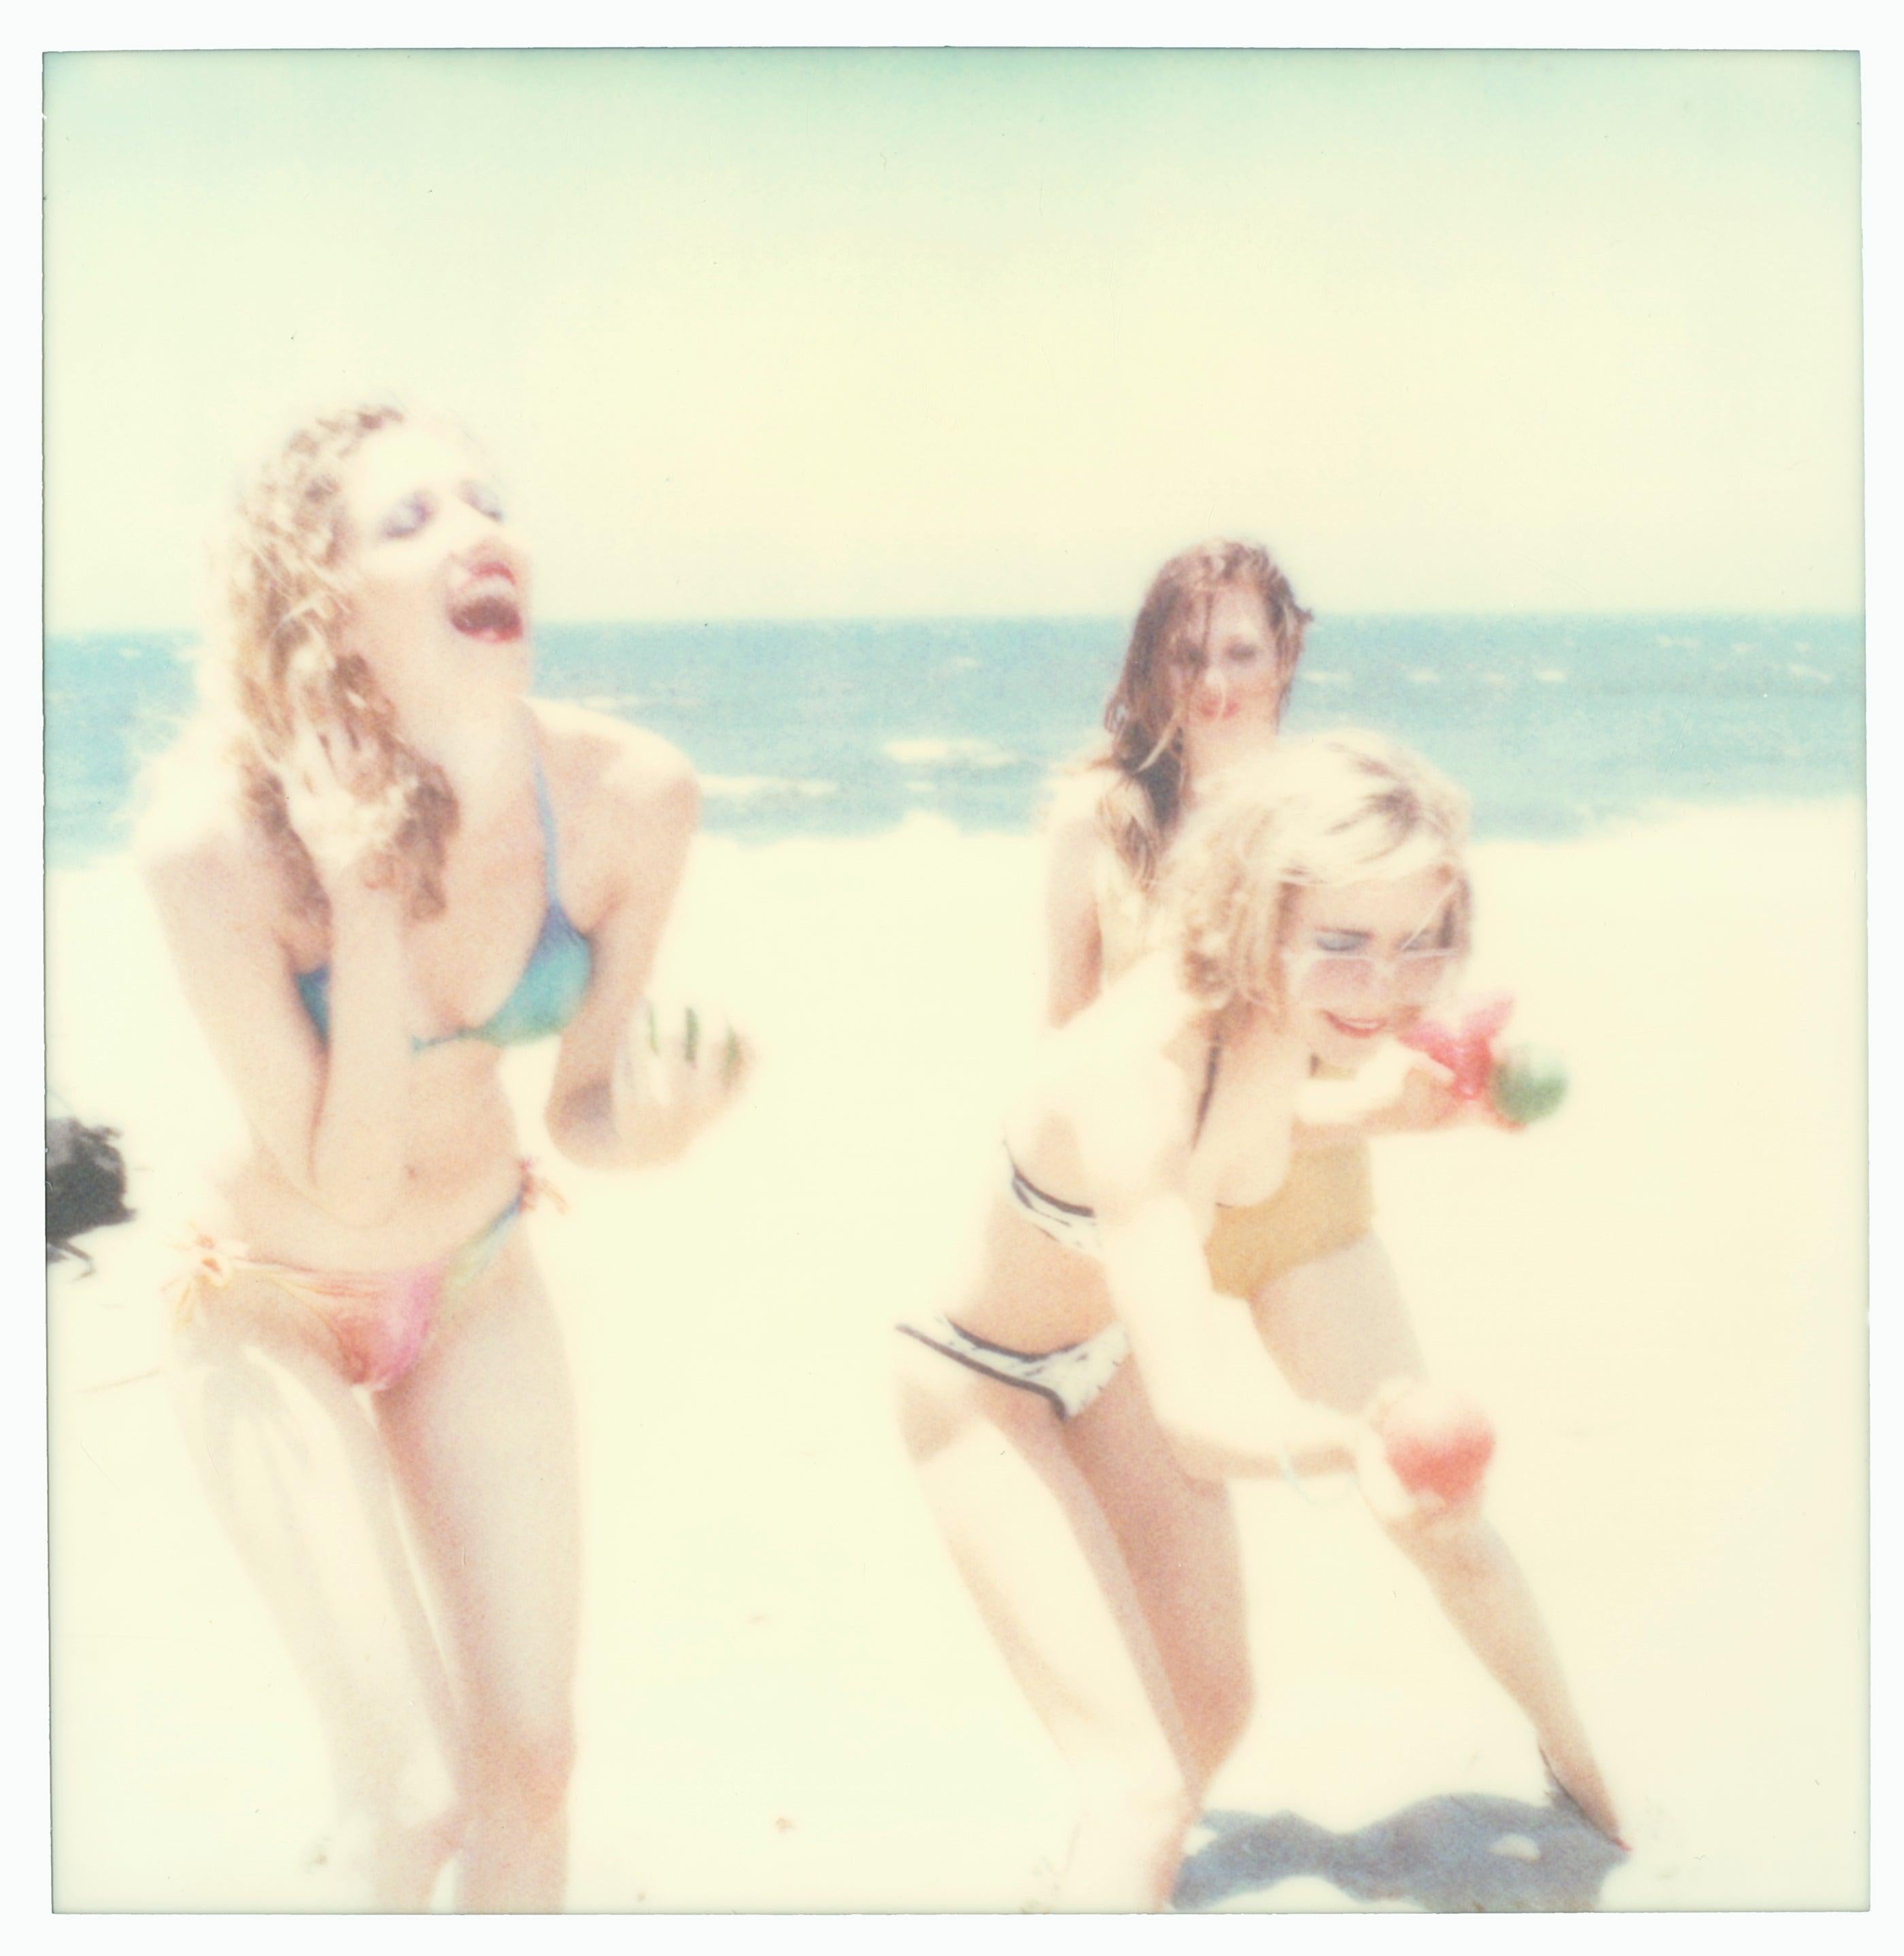 Boccia VI (Beachshoot ) with Radha Mitchell -Polaroid, Contemporary, Women